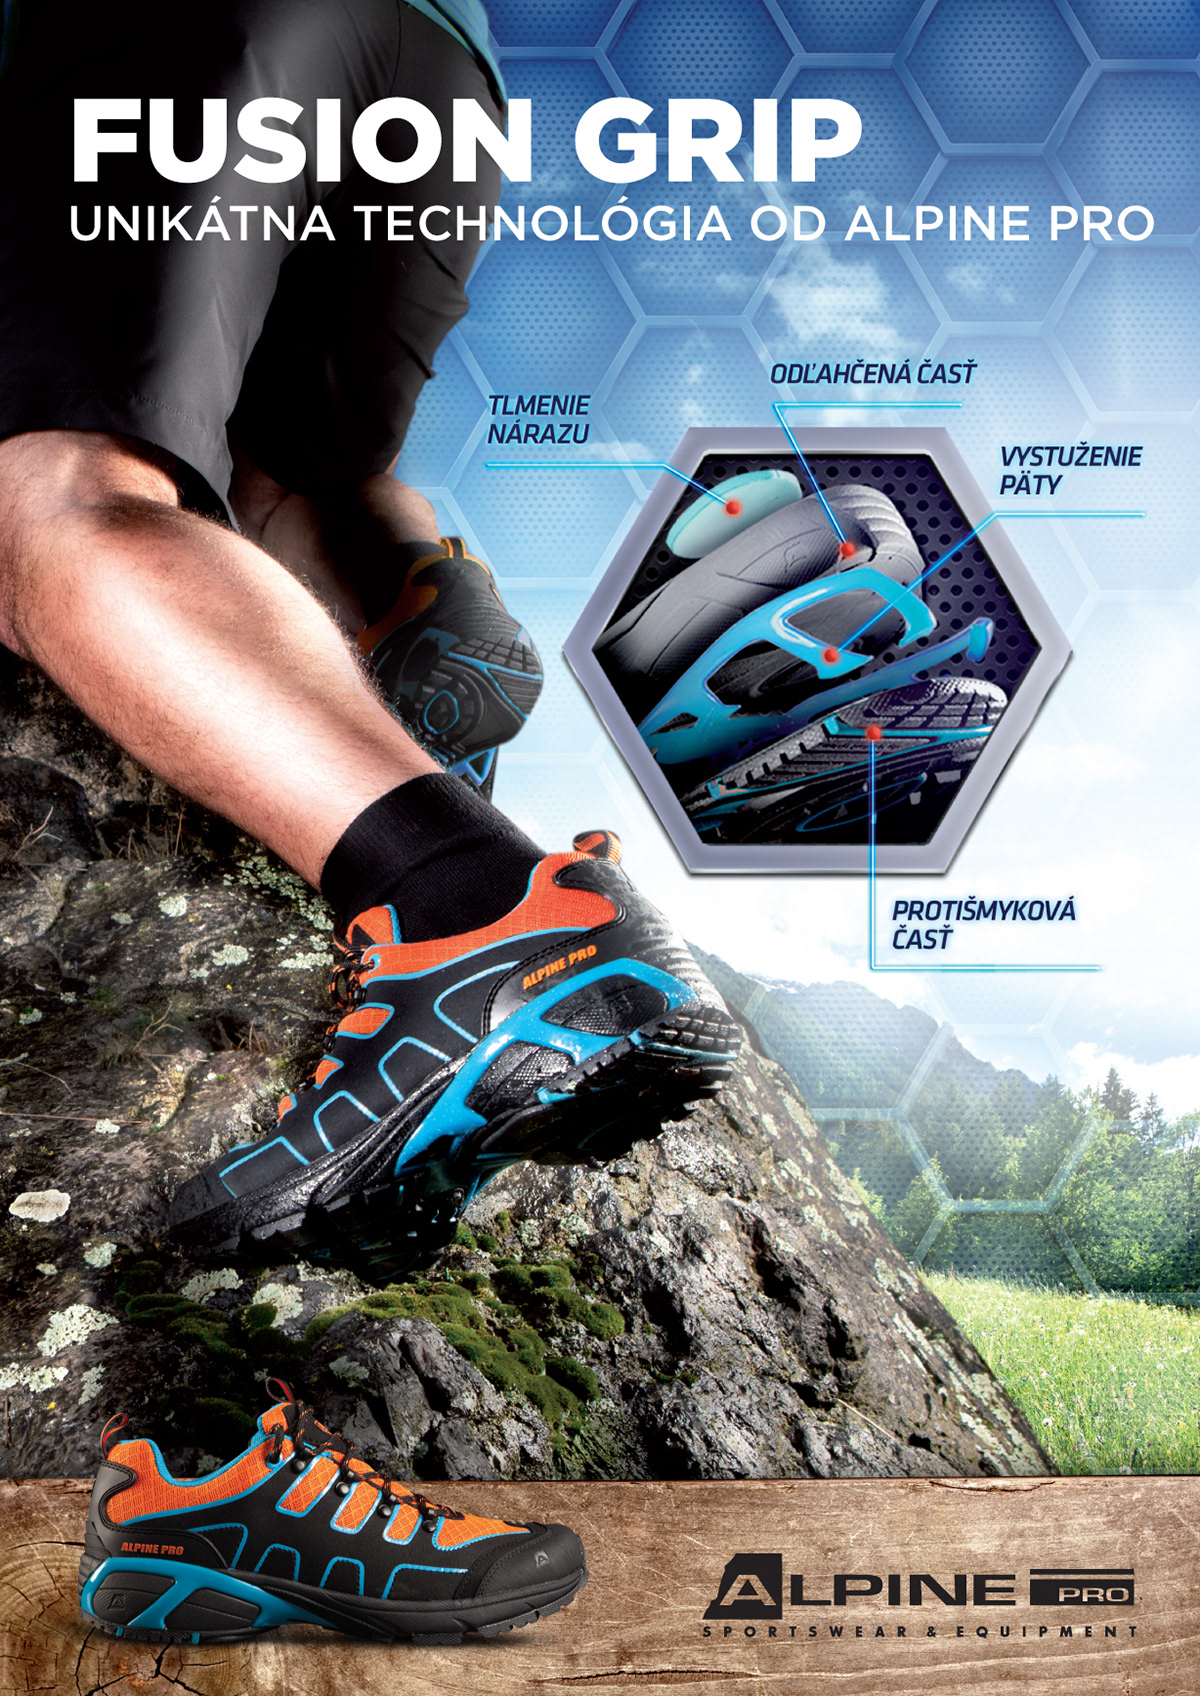 fusion grip alpine pro shoes technology vibram